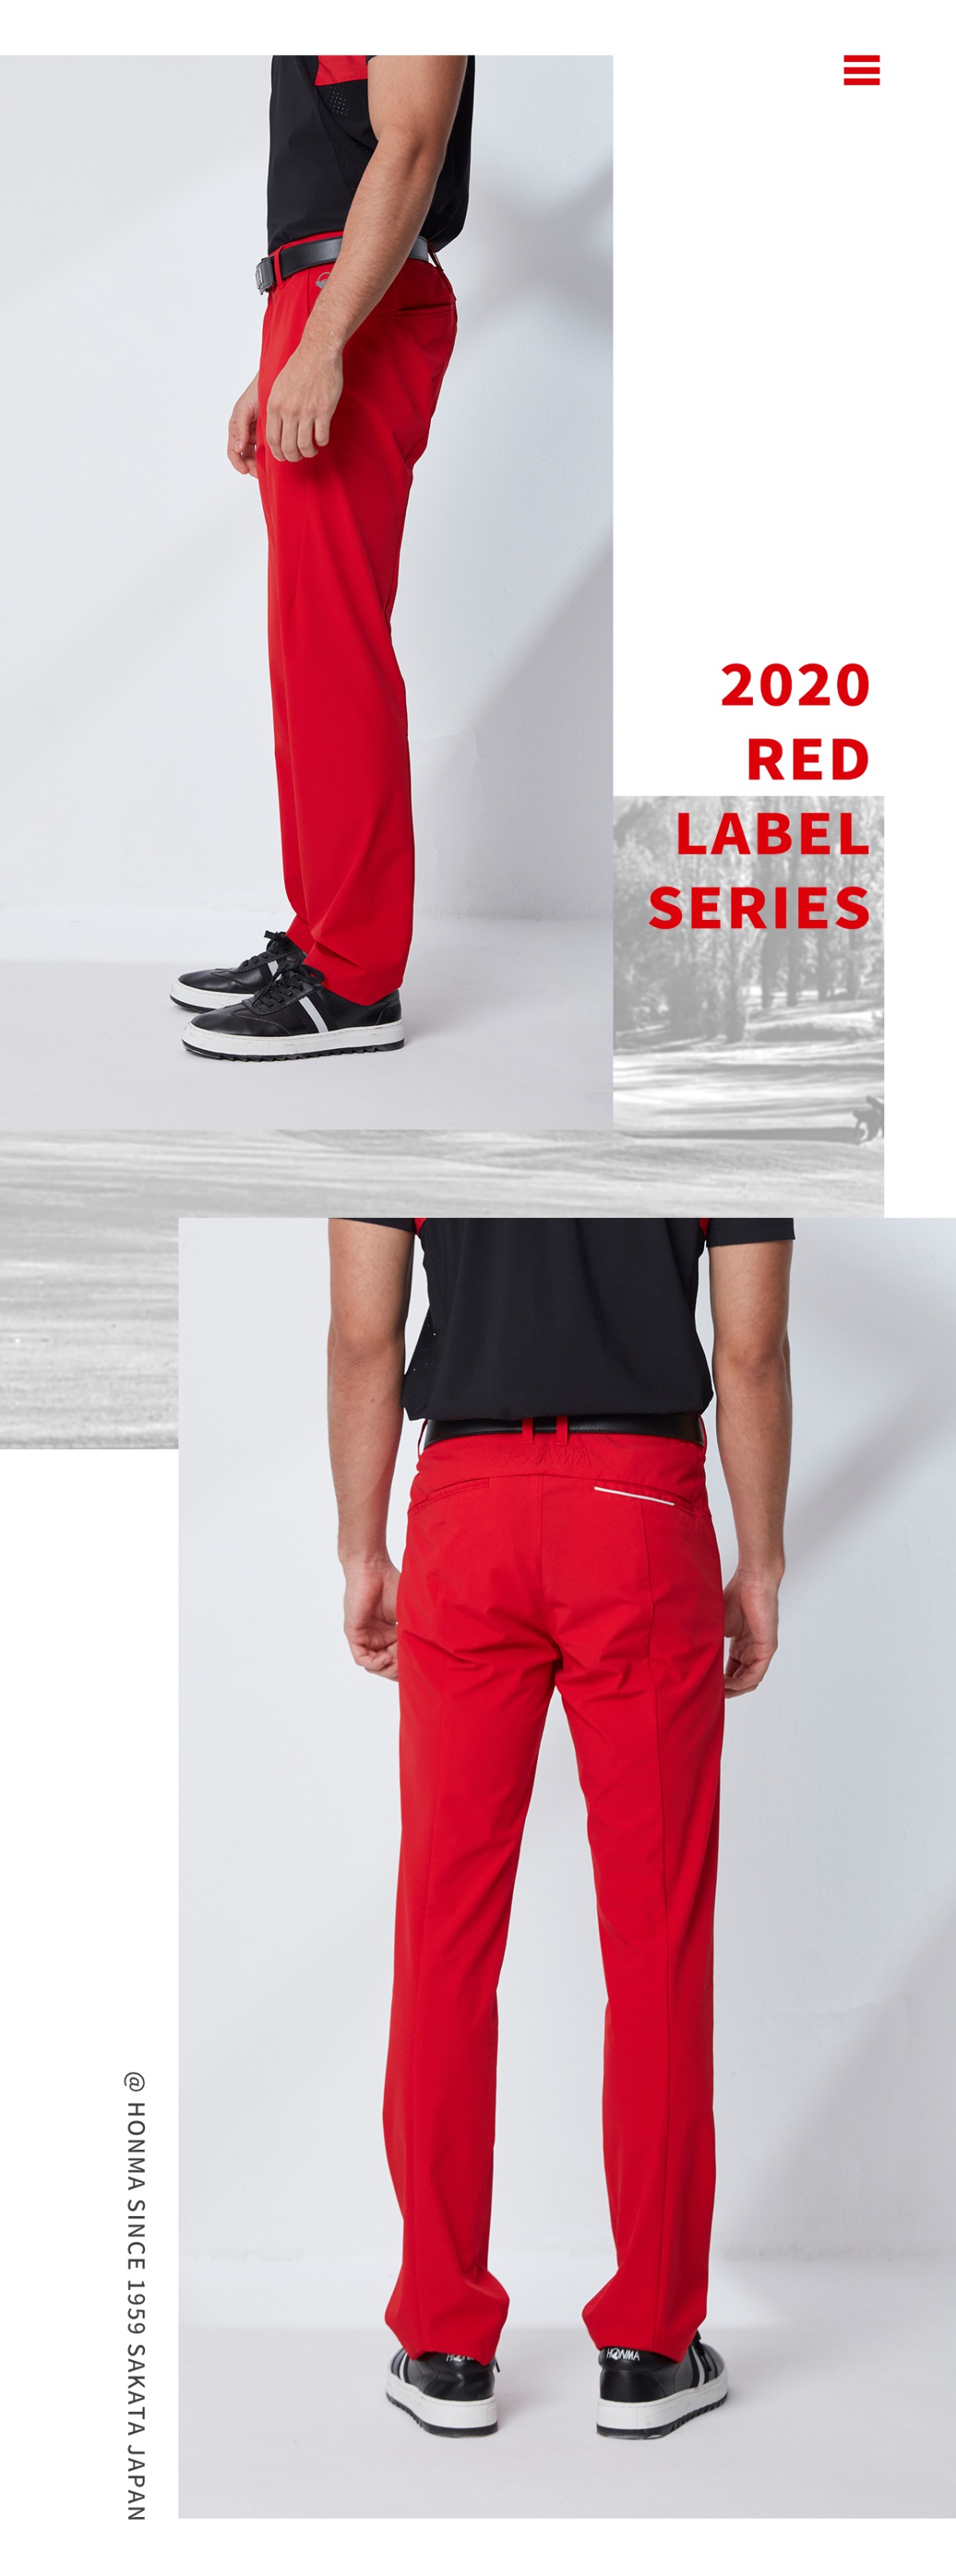 HONMA新款高尔夫男子长裤弹力面料防泼水舒适立体版型伸缩